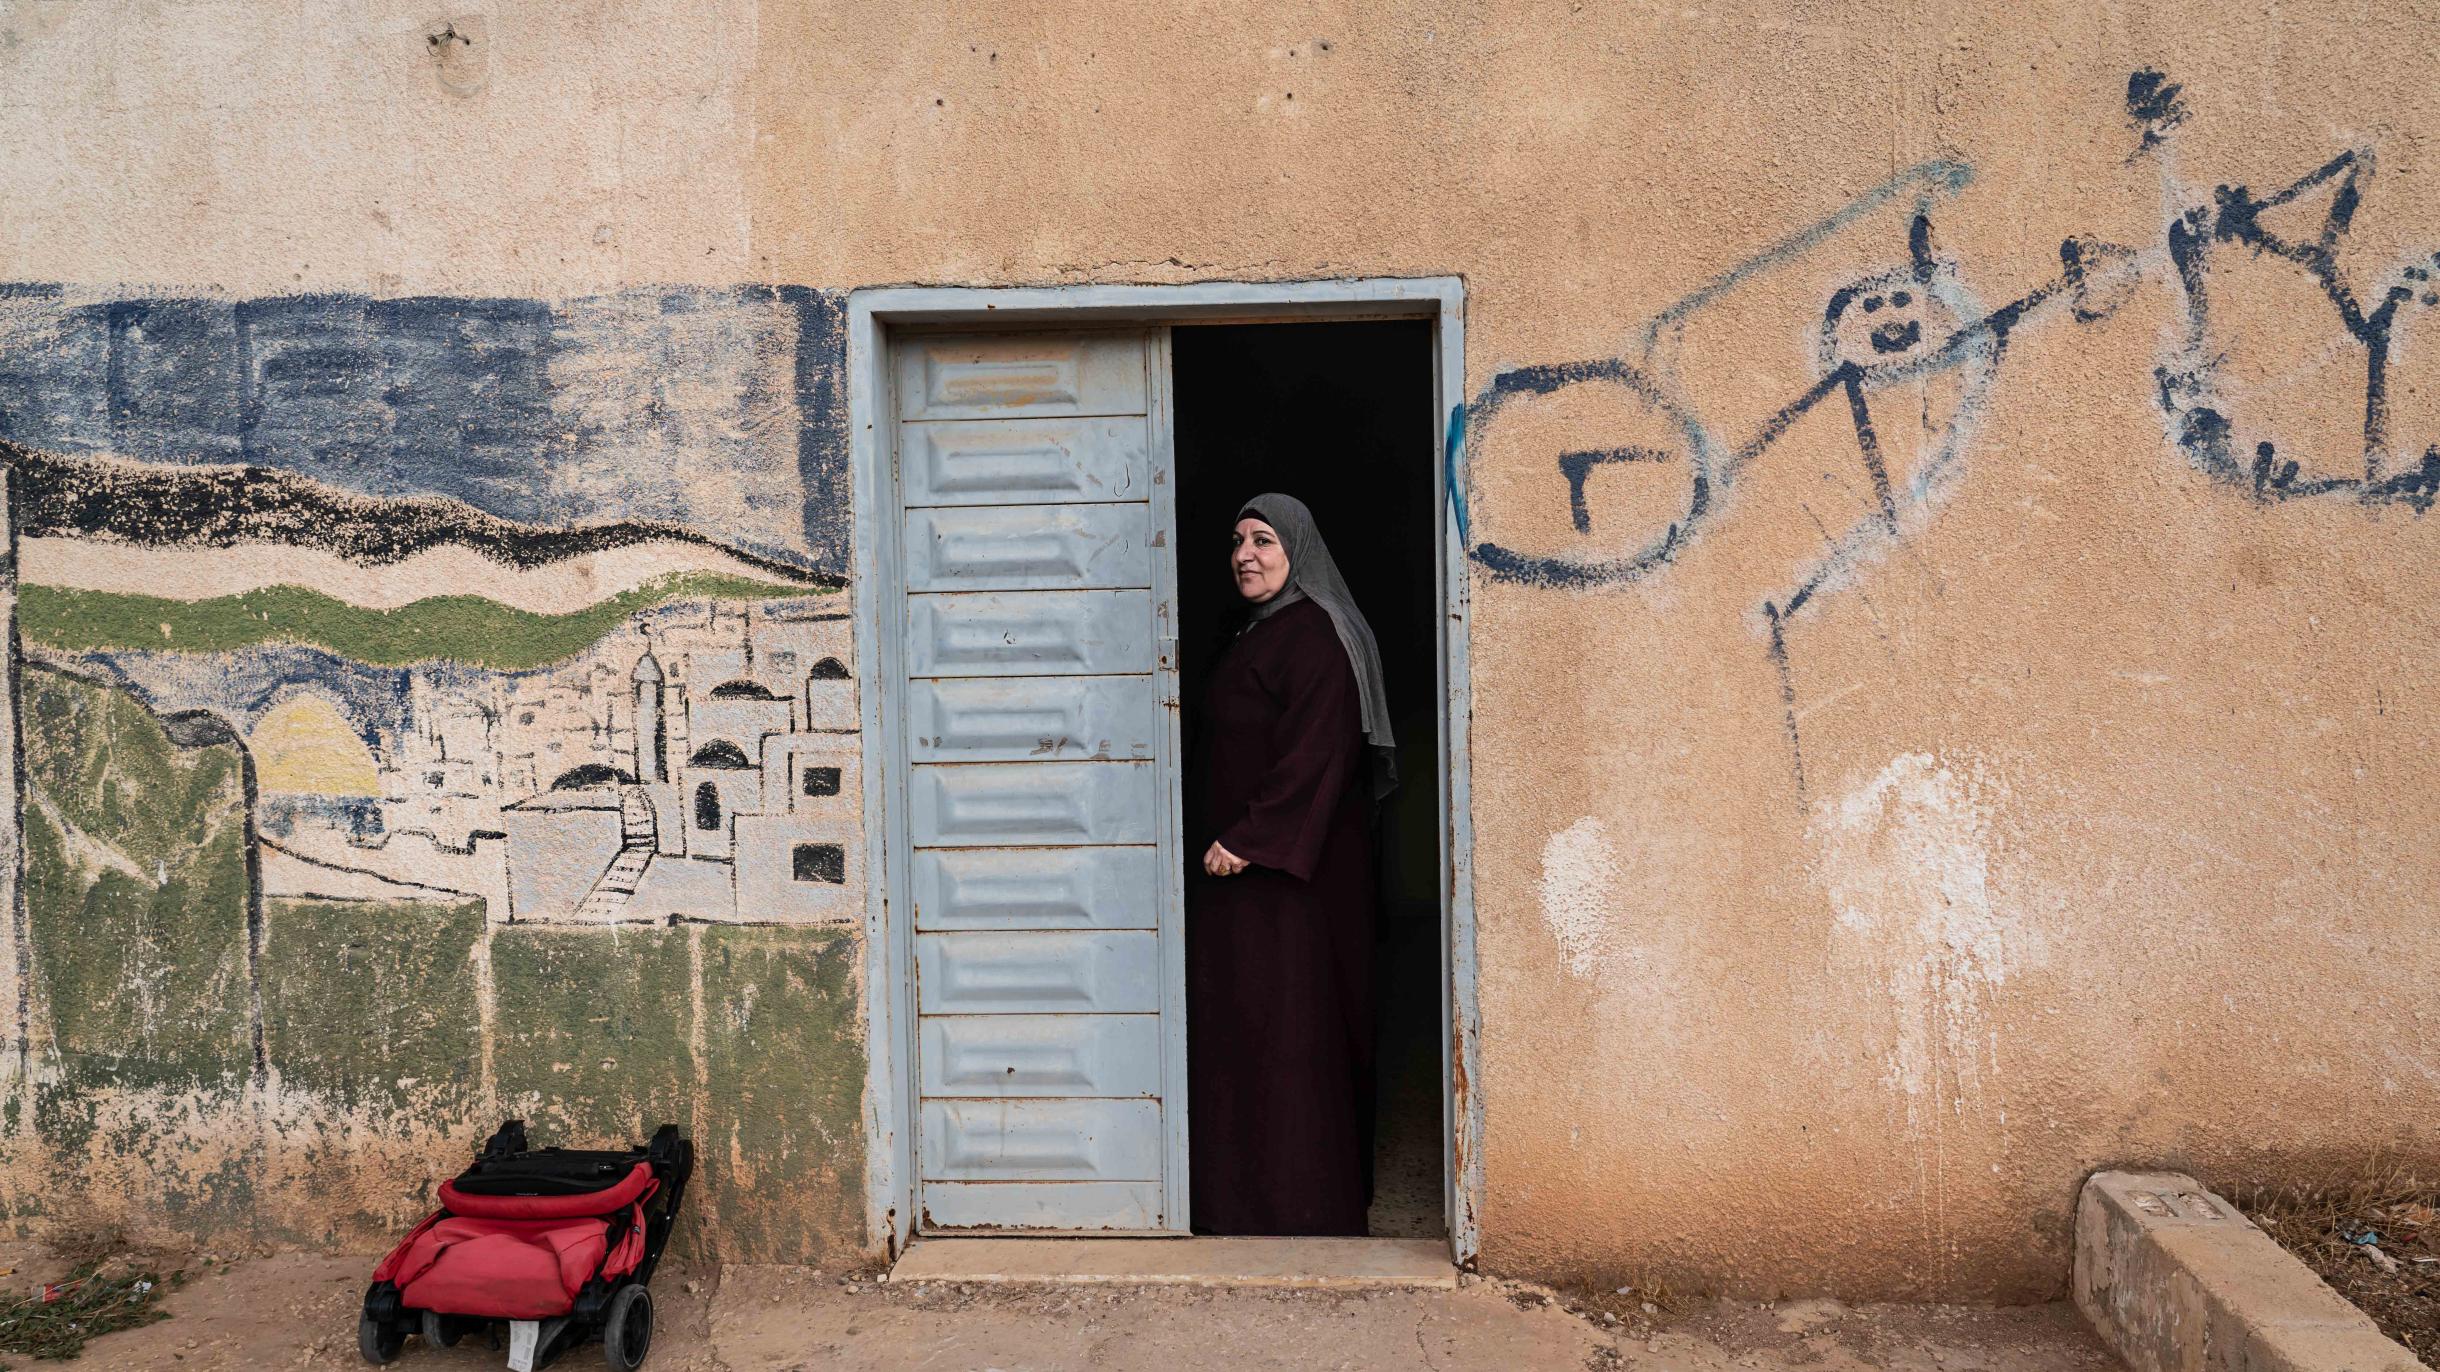 Iman, gekleidet in einem dunklen Gewand, steht in einer hellblau gestrichenen Tür. Die Steinwand um die Tür herum ist mit Schriftzeichen und einem Stadtbild bedeckt.